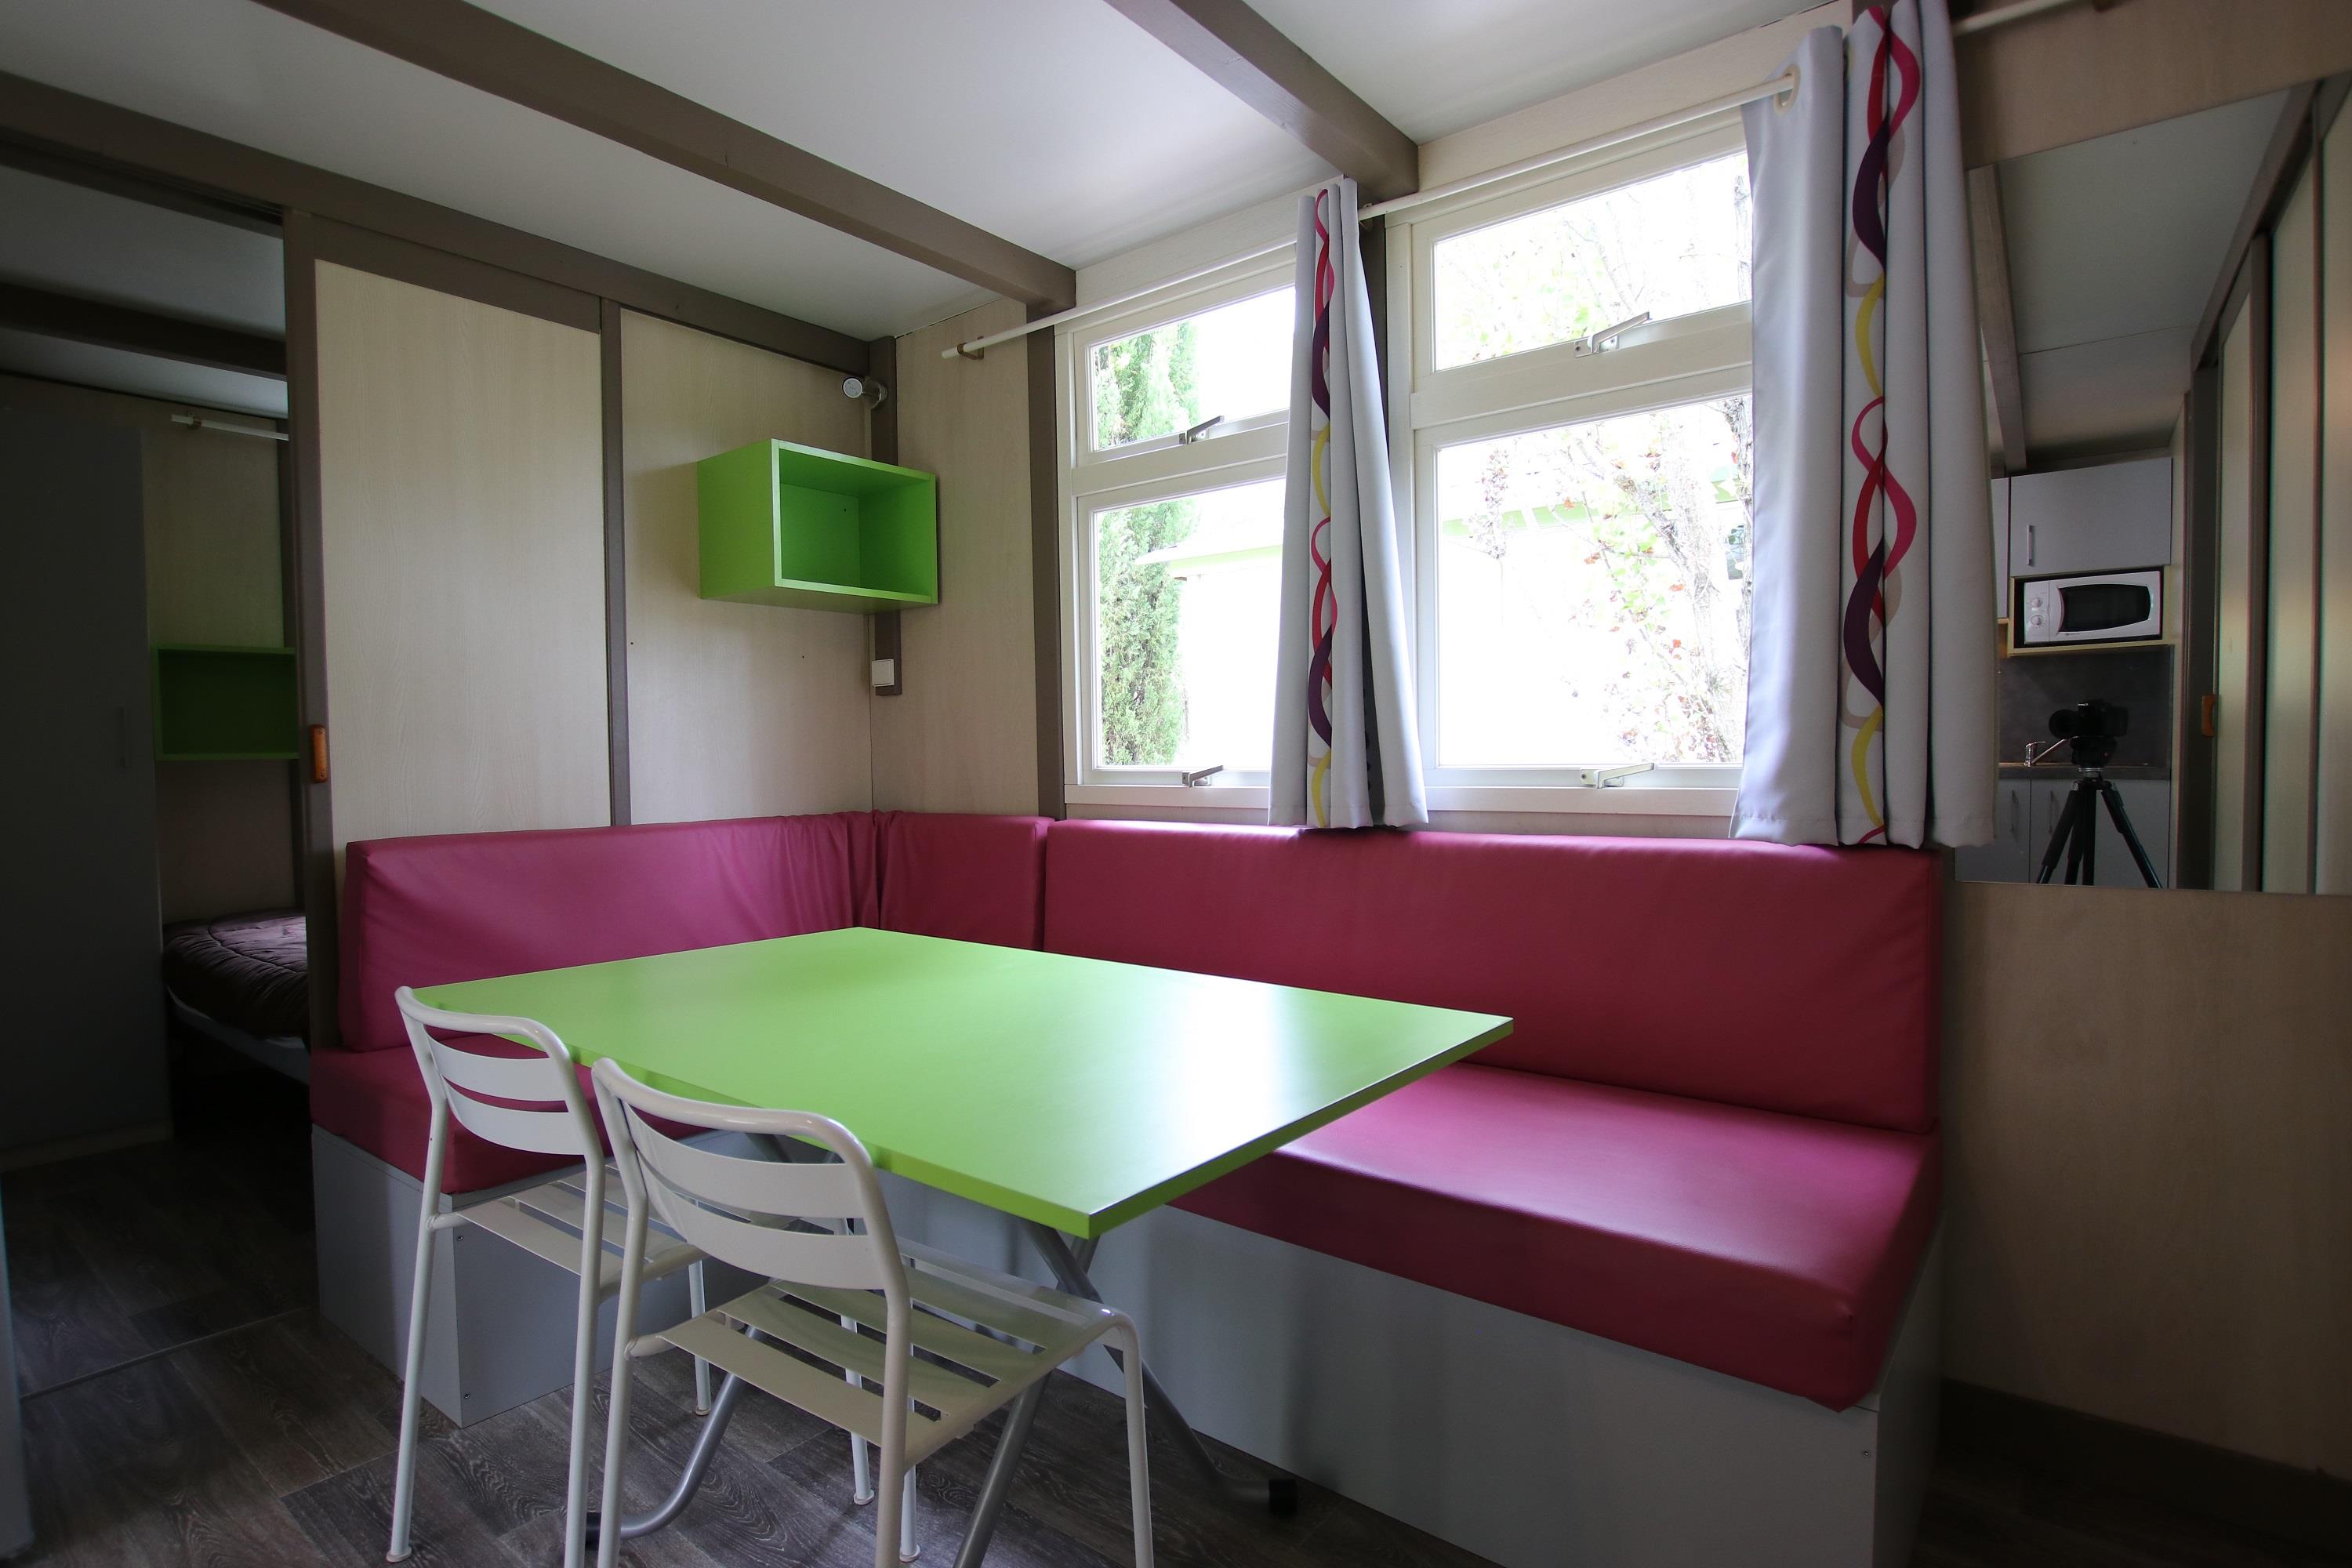 Huuraccommodatie - Chalet Cottage 31M²   Ruim  Rustig  In Het Dennenbos  3 Kamers - Domaine de l'Ecluse